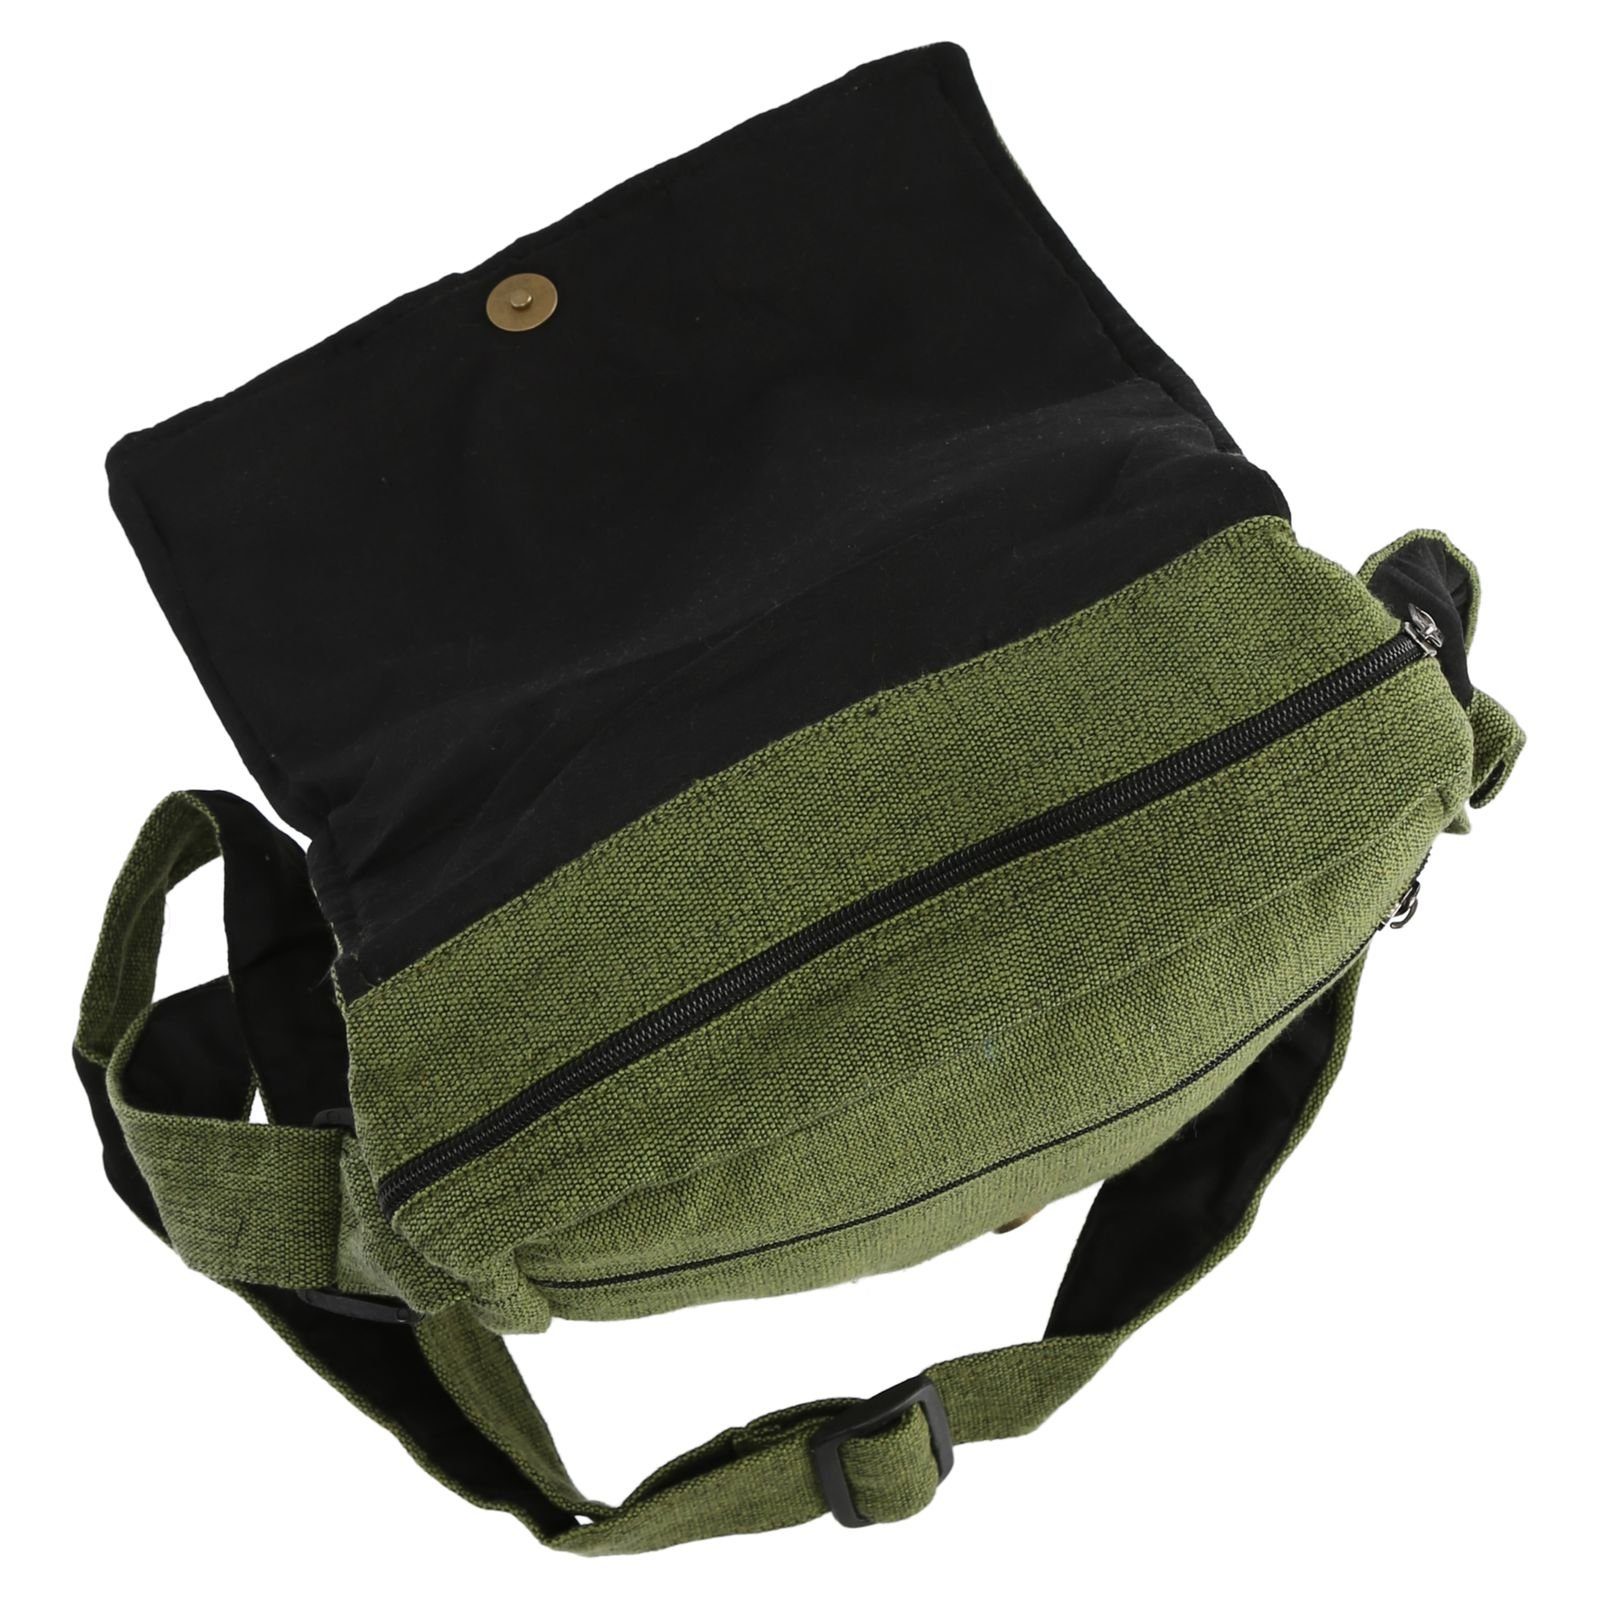 Lebensblume MAGIE Hippie Tasche Umhängetasche +Schulterriemen UND Handtasche Schultertasche Grün KUNST